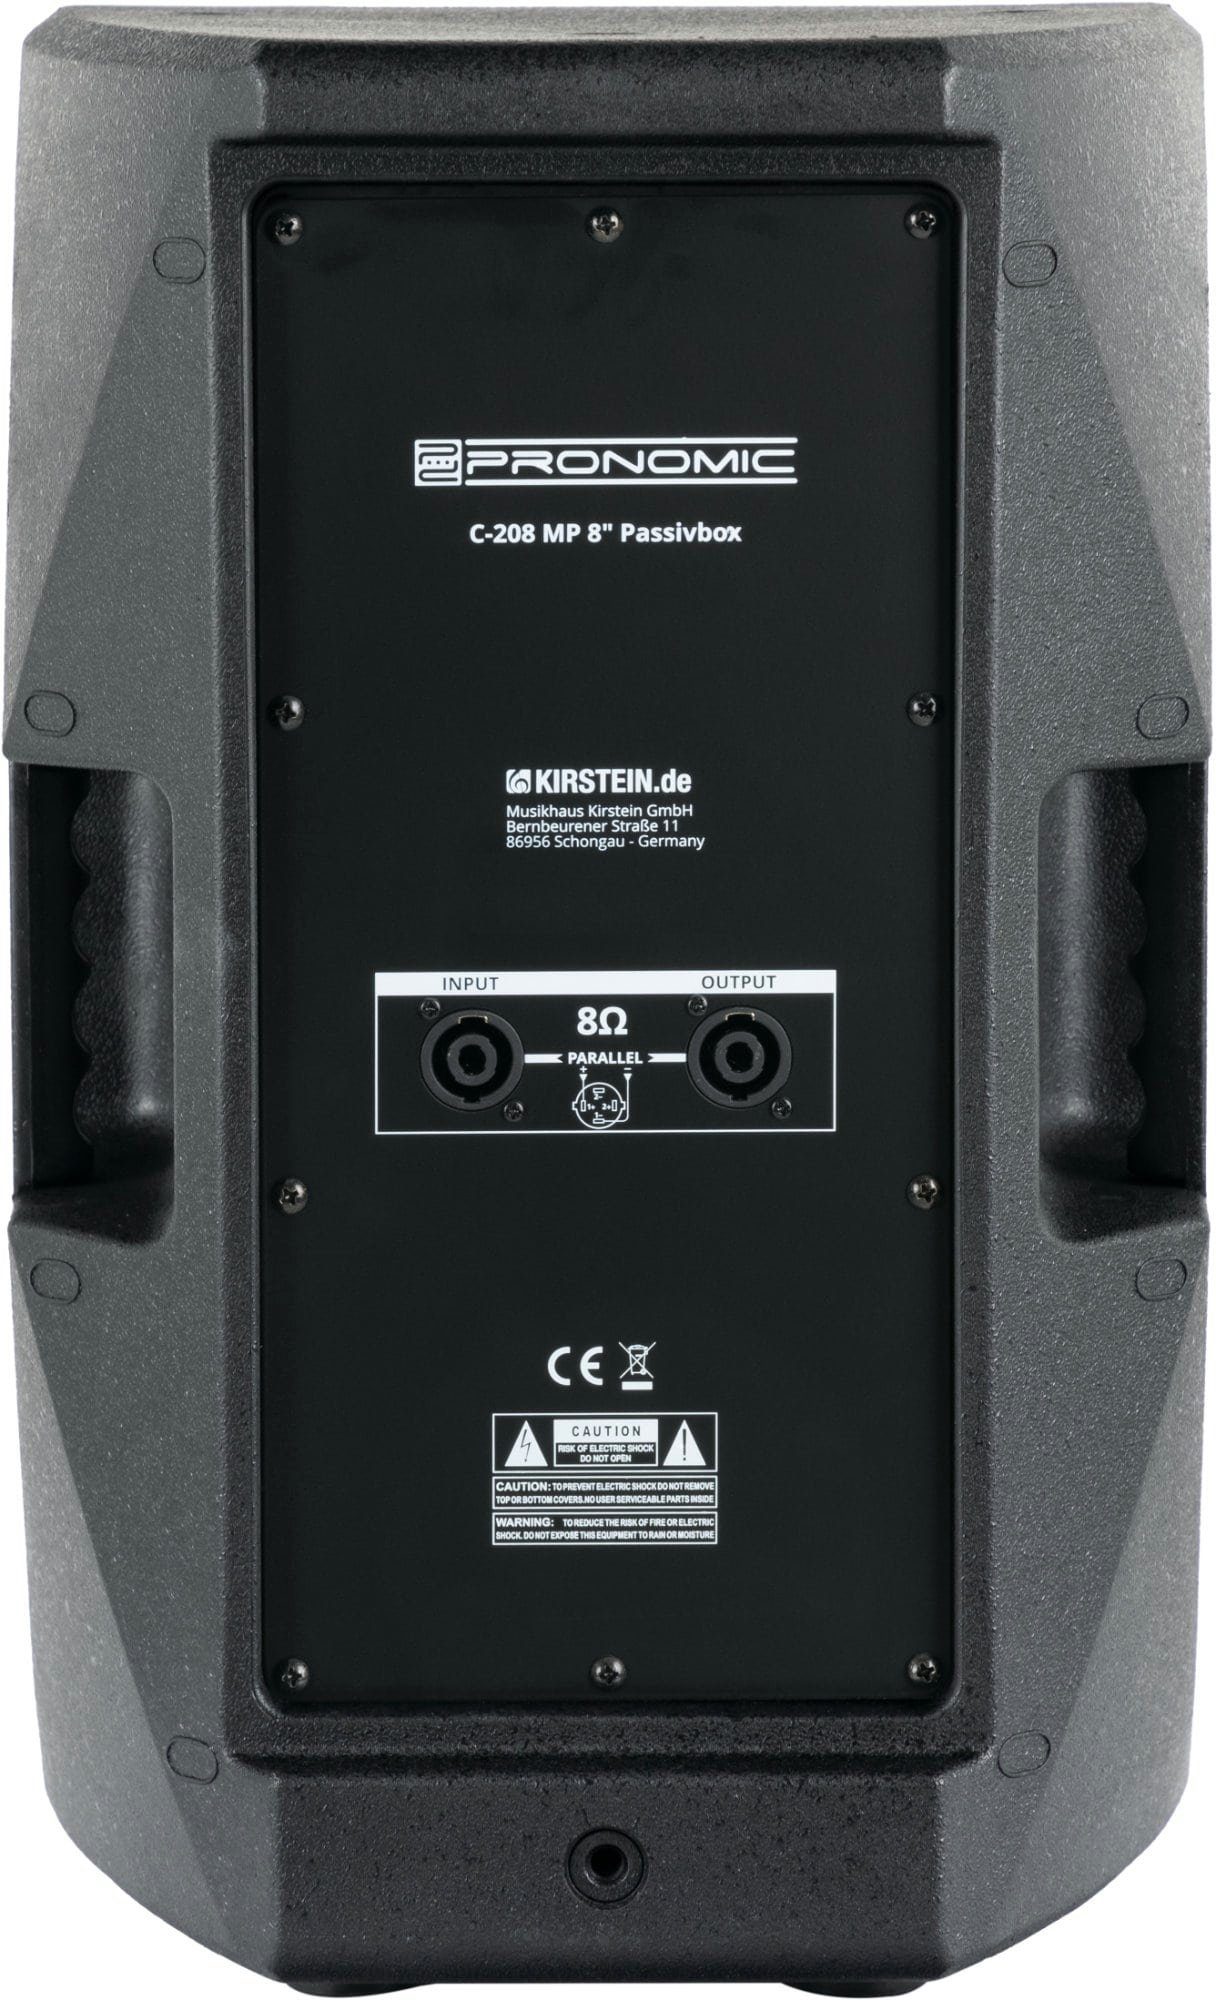 Tragegriffe 2-Wege W, & MP Paar Lautsprecher passive C-208 8"- im (150 Pronomic Gehäuse) strapazierfähigem Box 2 mit Multifunktionsgehäuse Passivboxen